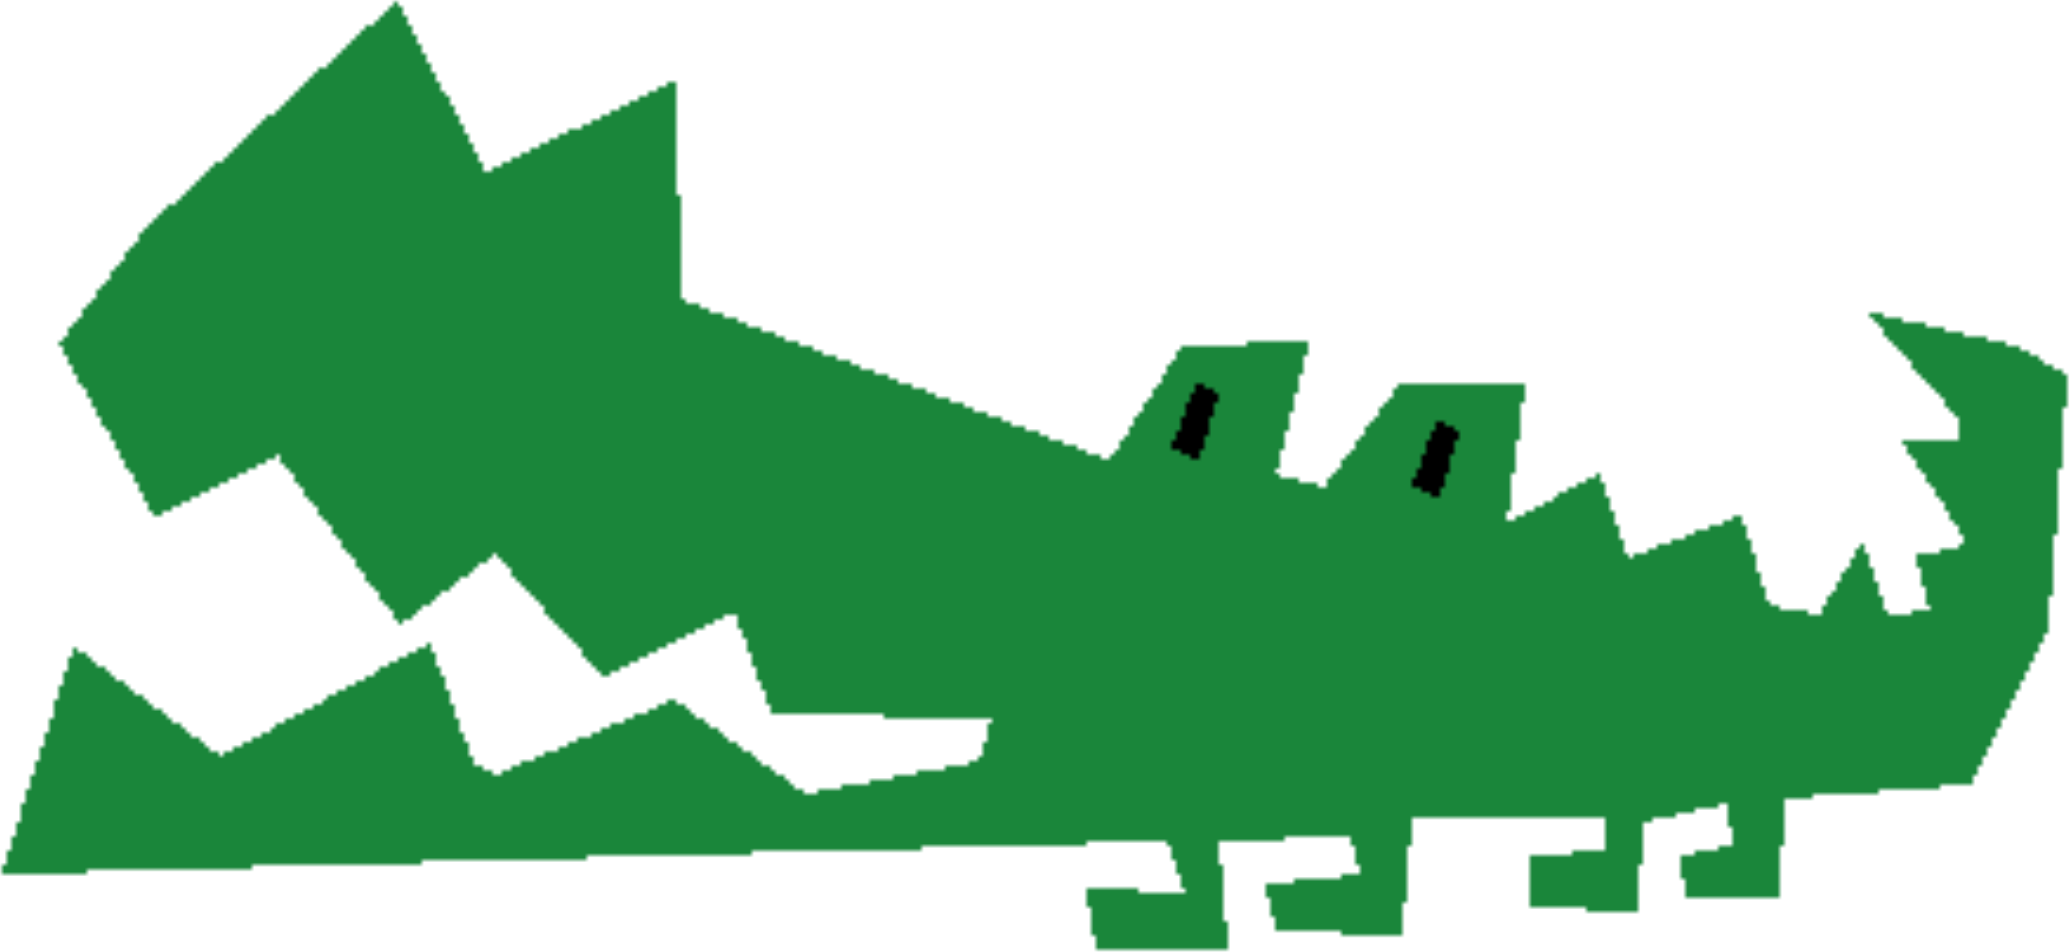 gator clipart logo